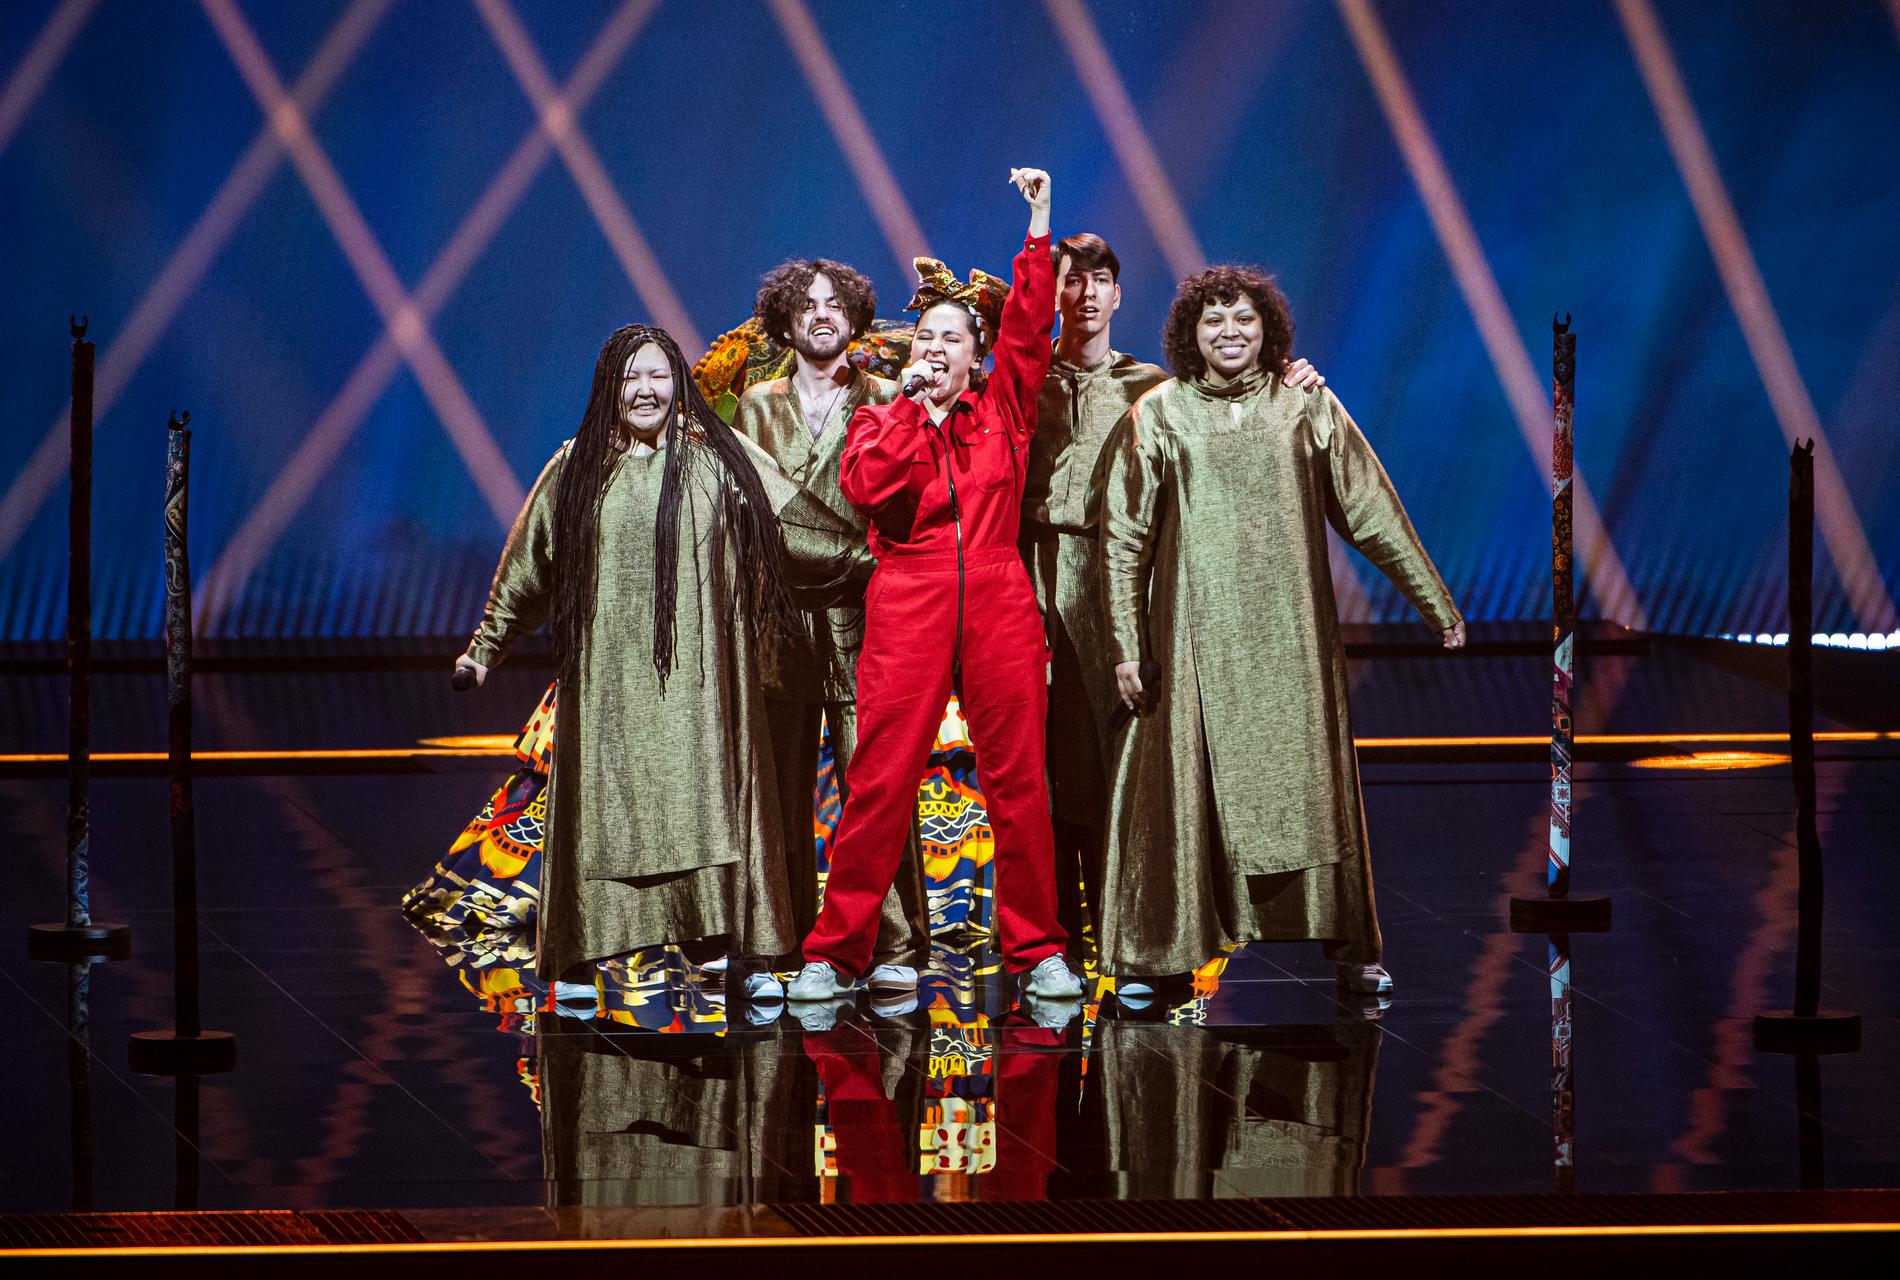 Ryska artisten Manizha Sangin tävlade i Eurovision song contest 2021.